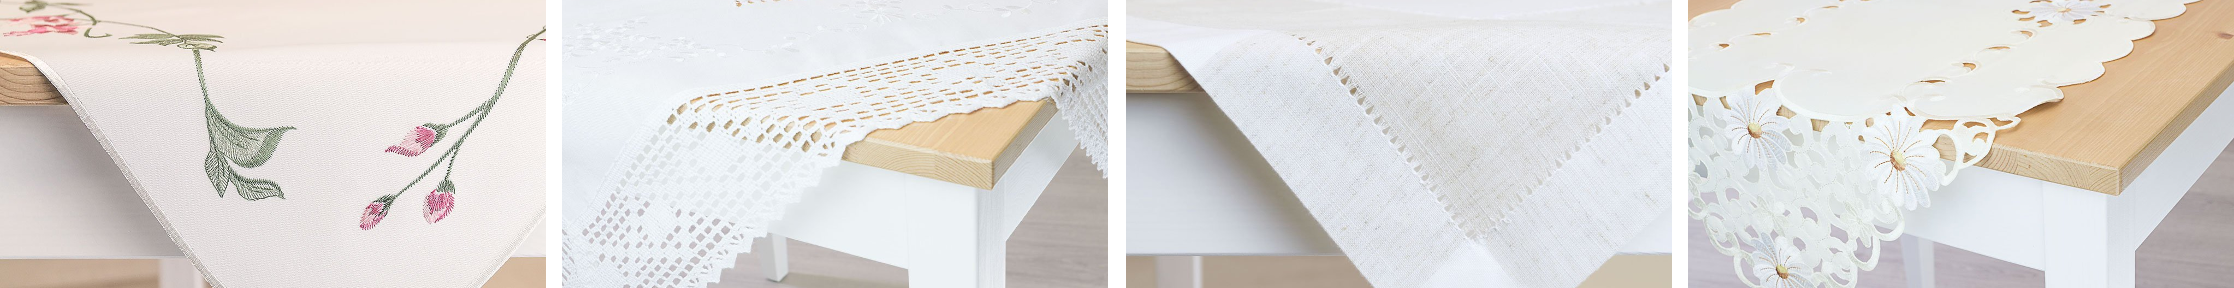 Tischdecken in verschiedenen Designs